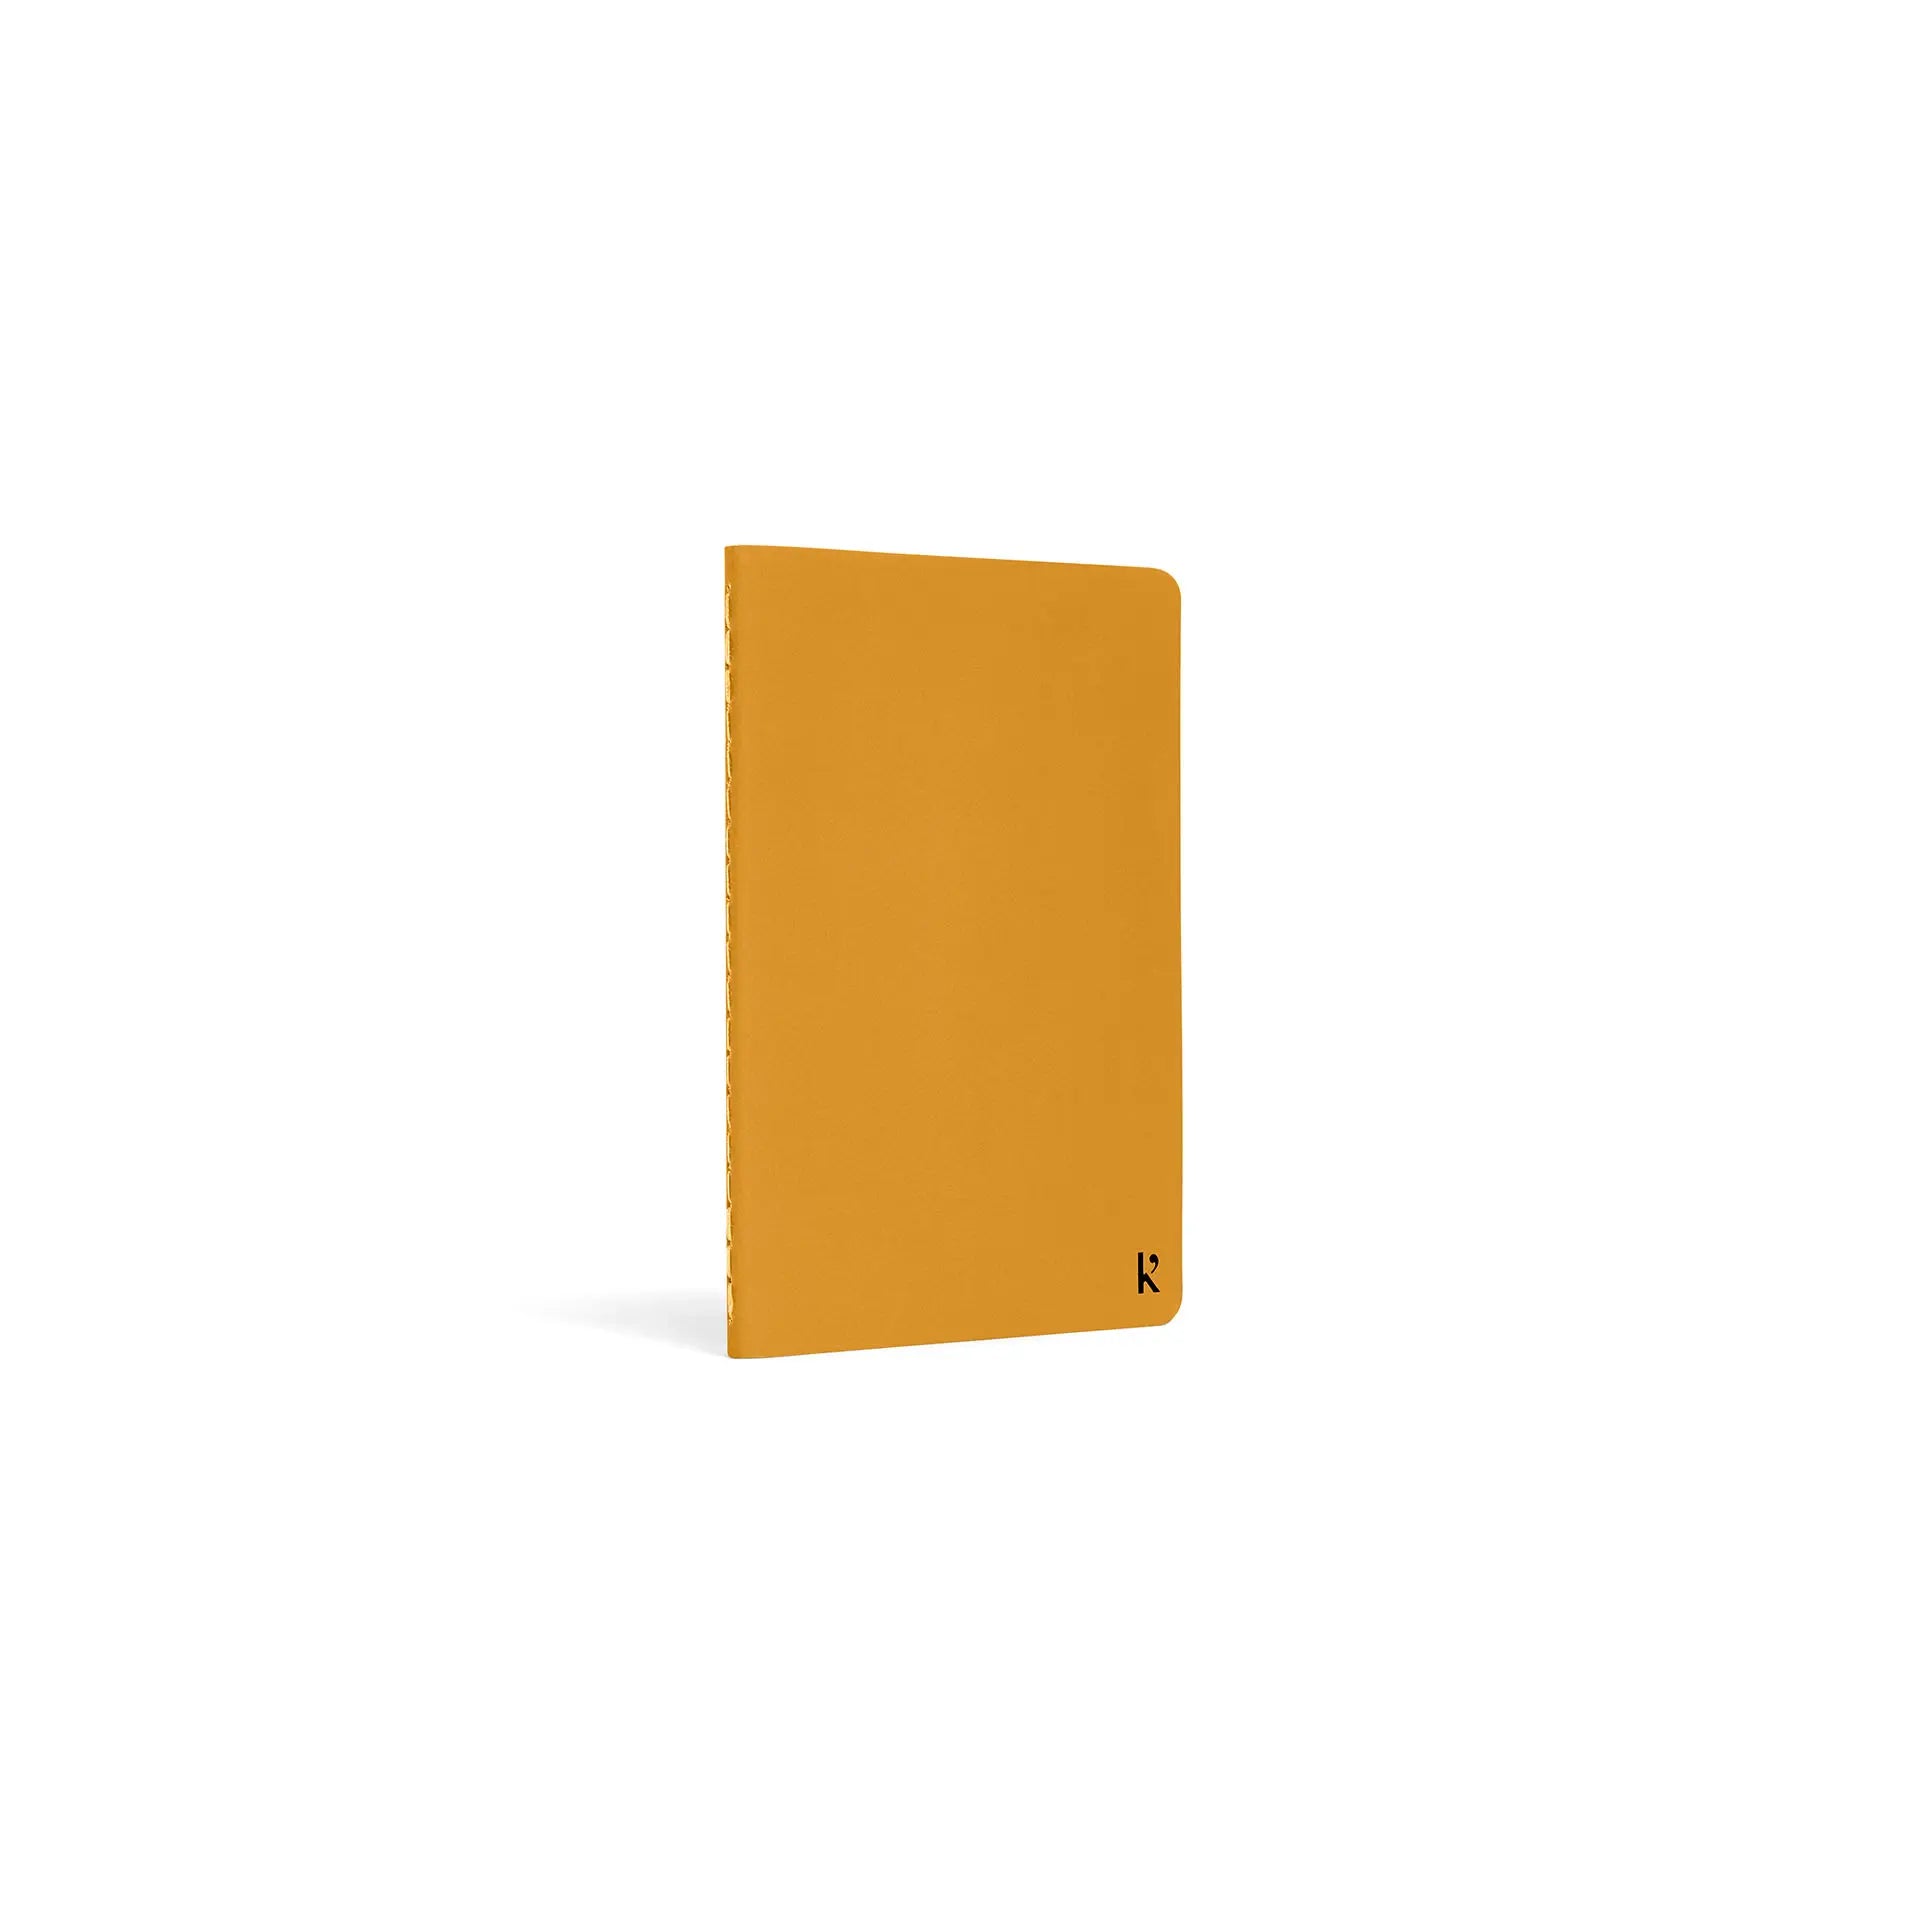 Karst Pocket Journal - A6